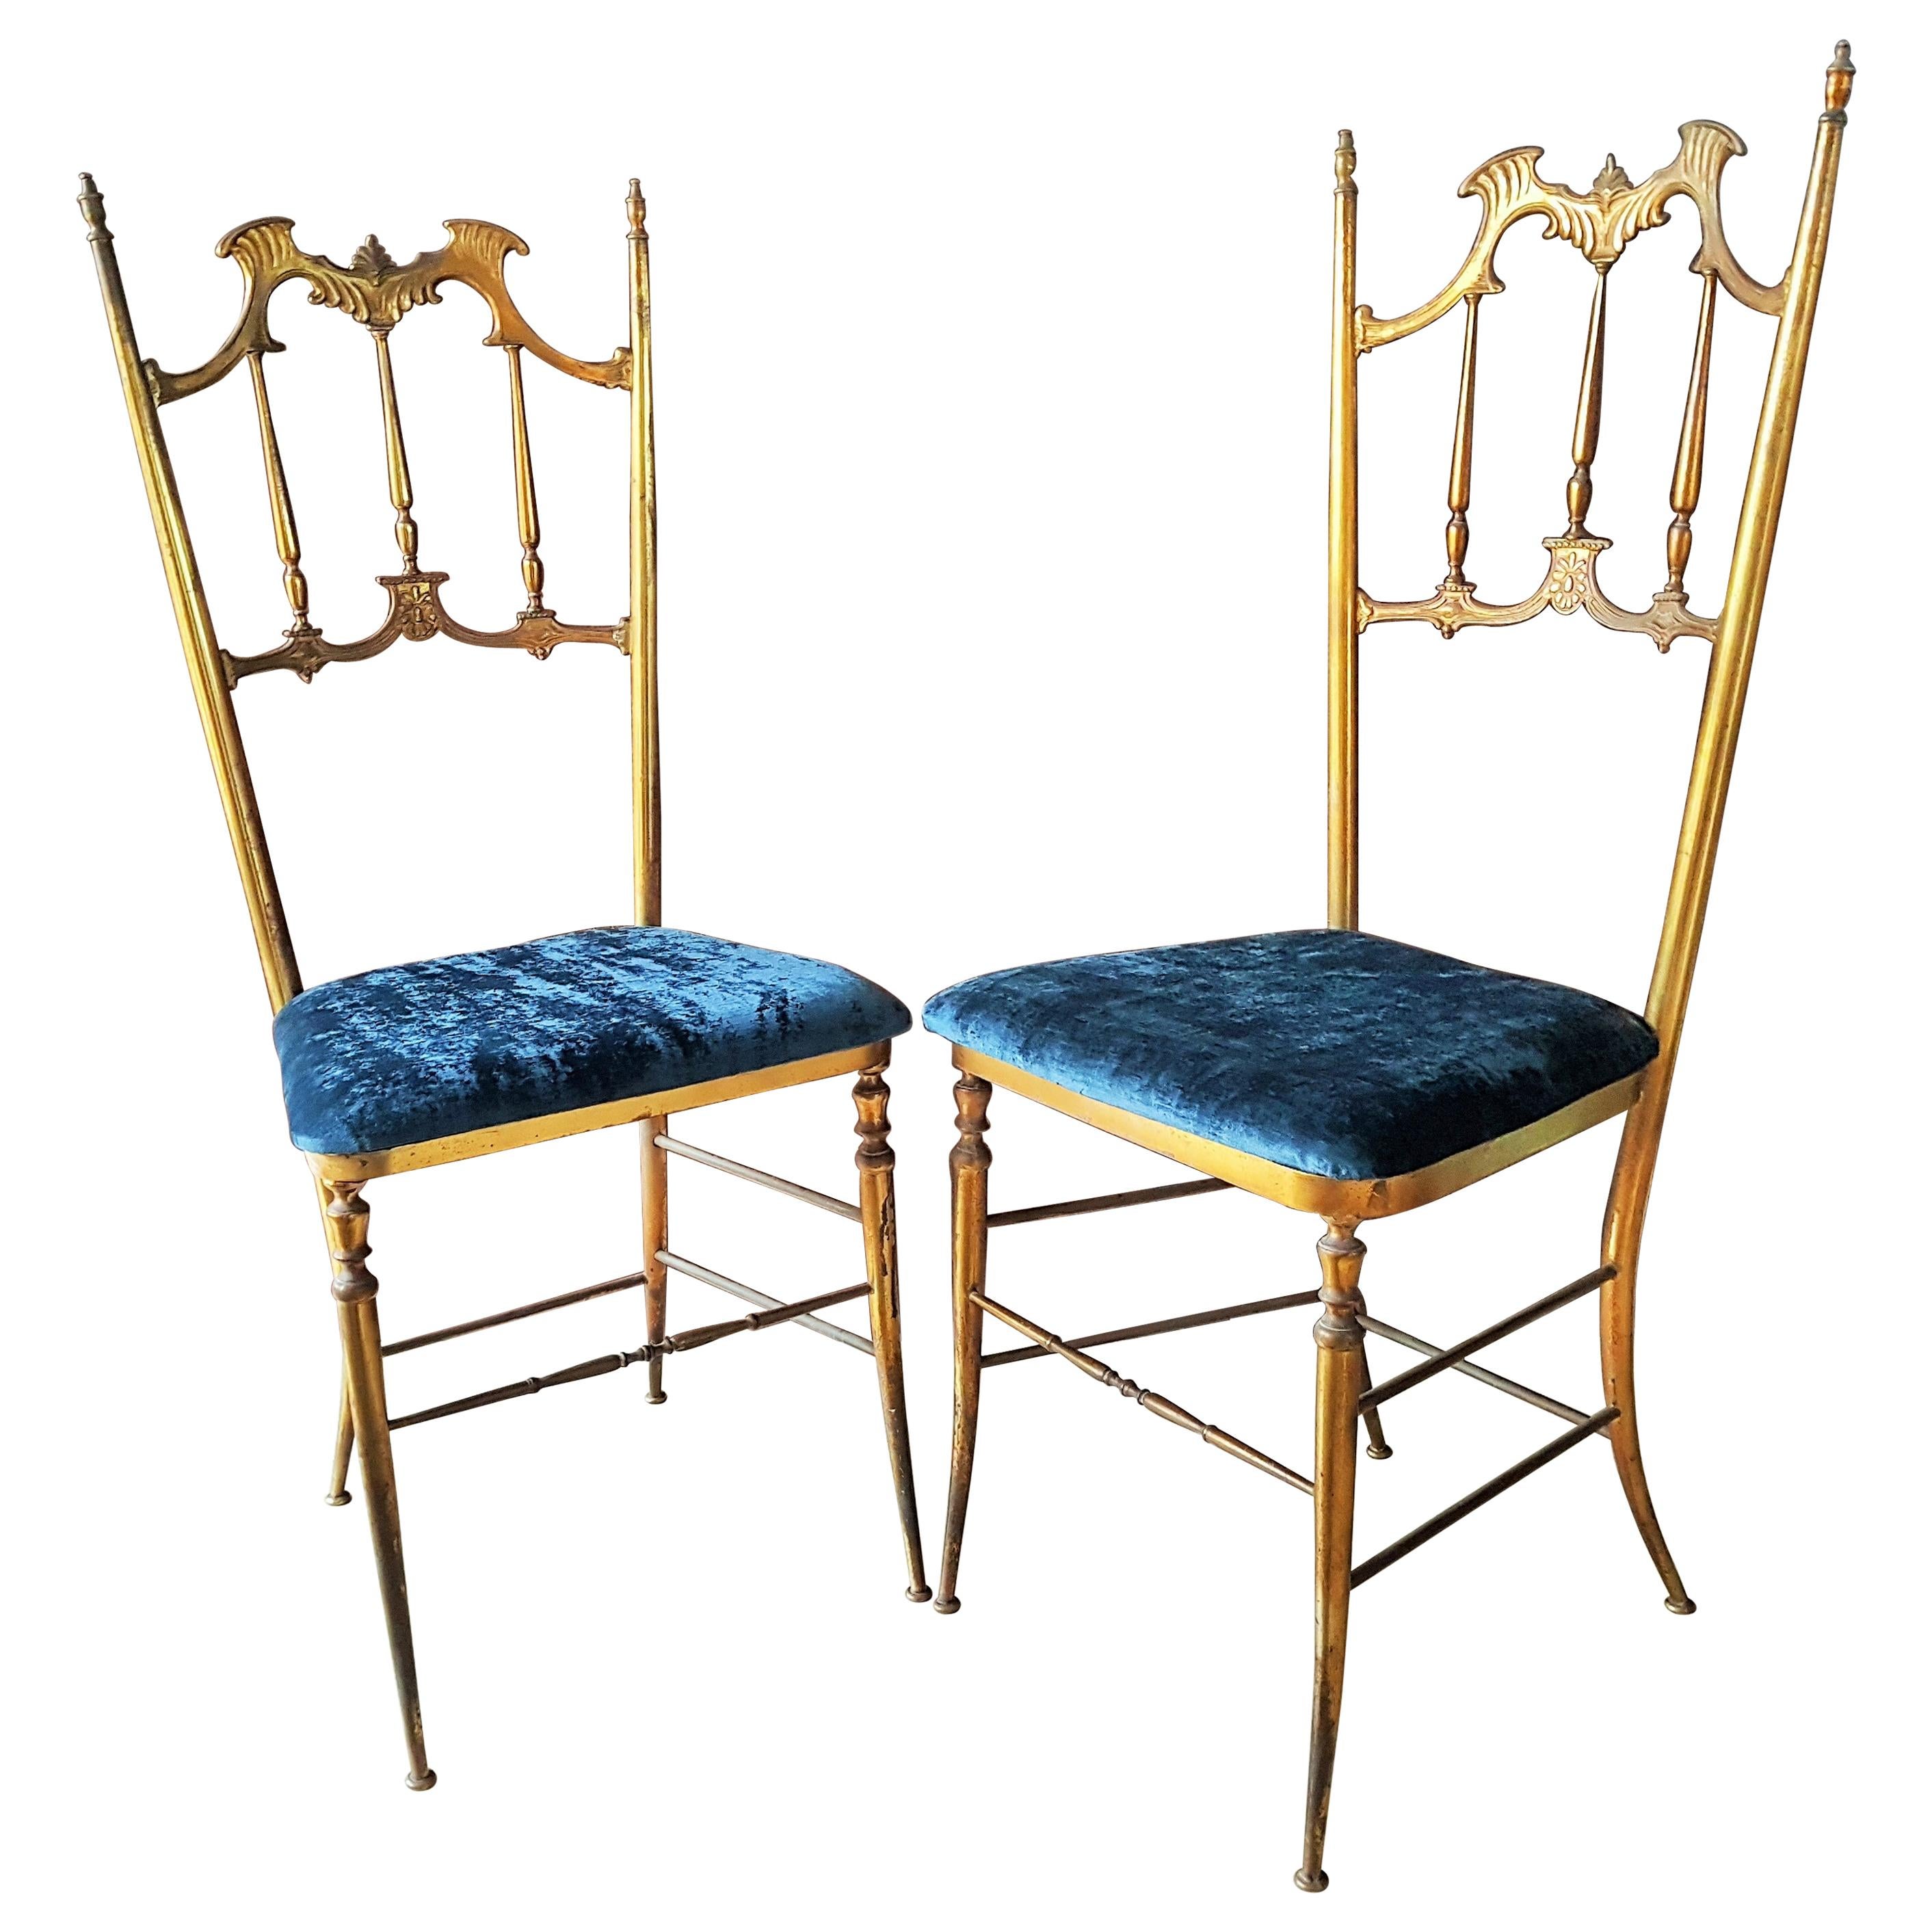 Midcentury Pair of Brass Italian Chiavari Chairs, Italy, 1950s